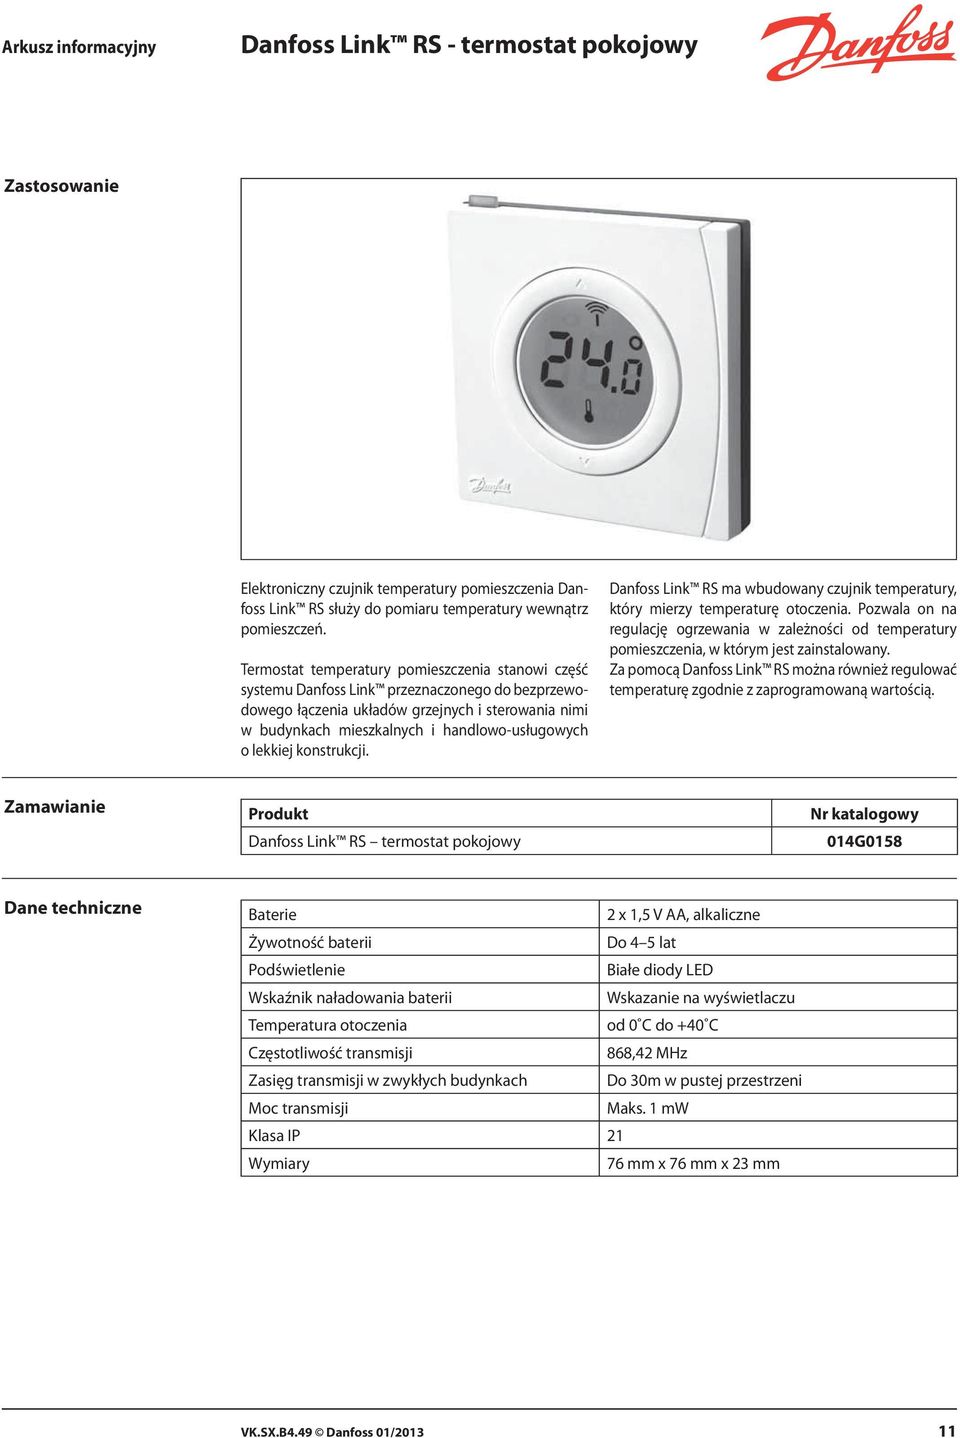 lekkiej konstrukcji. Danfoss Link RS ma wbudowany czujnik temperatury, który mierzy temperaturę otoczenia.